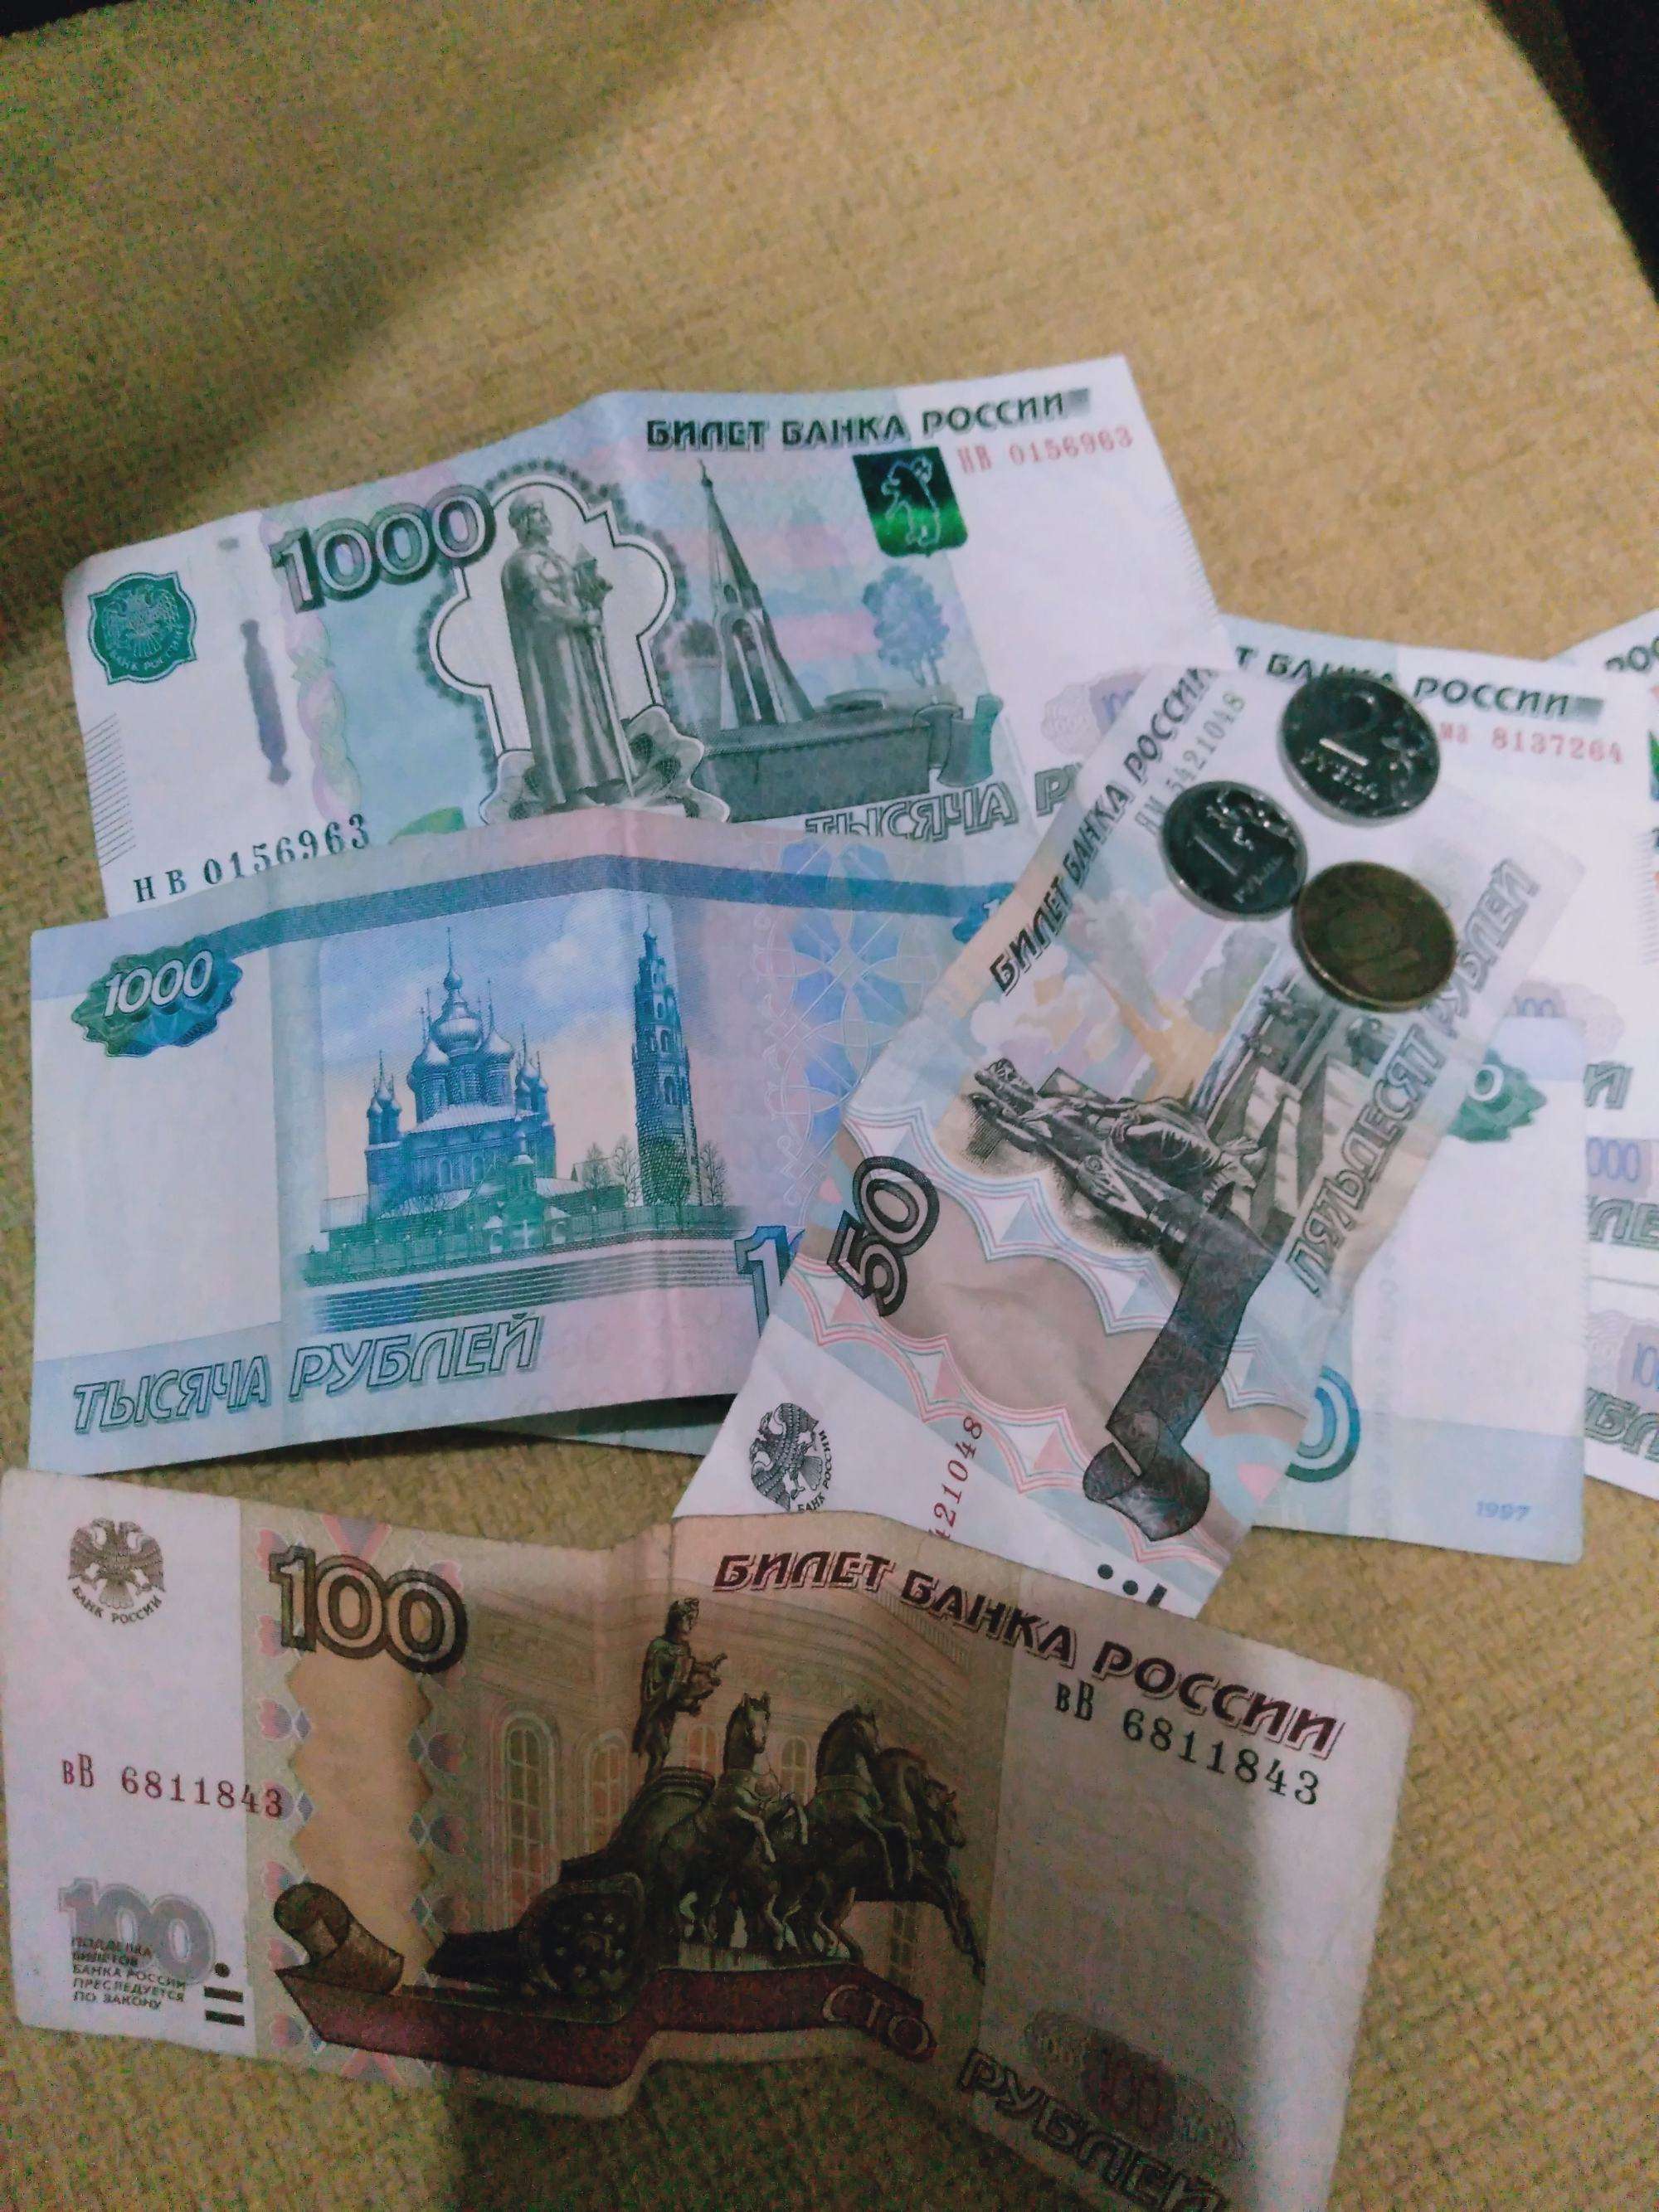 我们把俄罗斯的钱叫卢布,那外国人怎么称呼人民币呢说出来别不信 哈喽